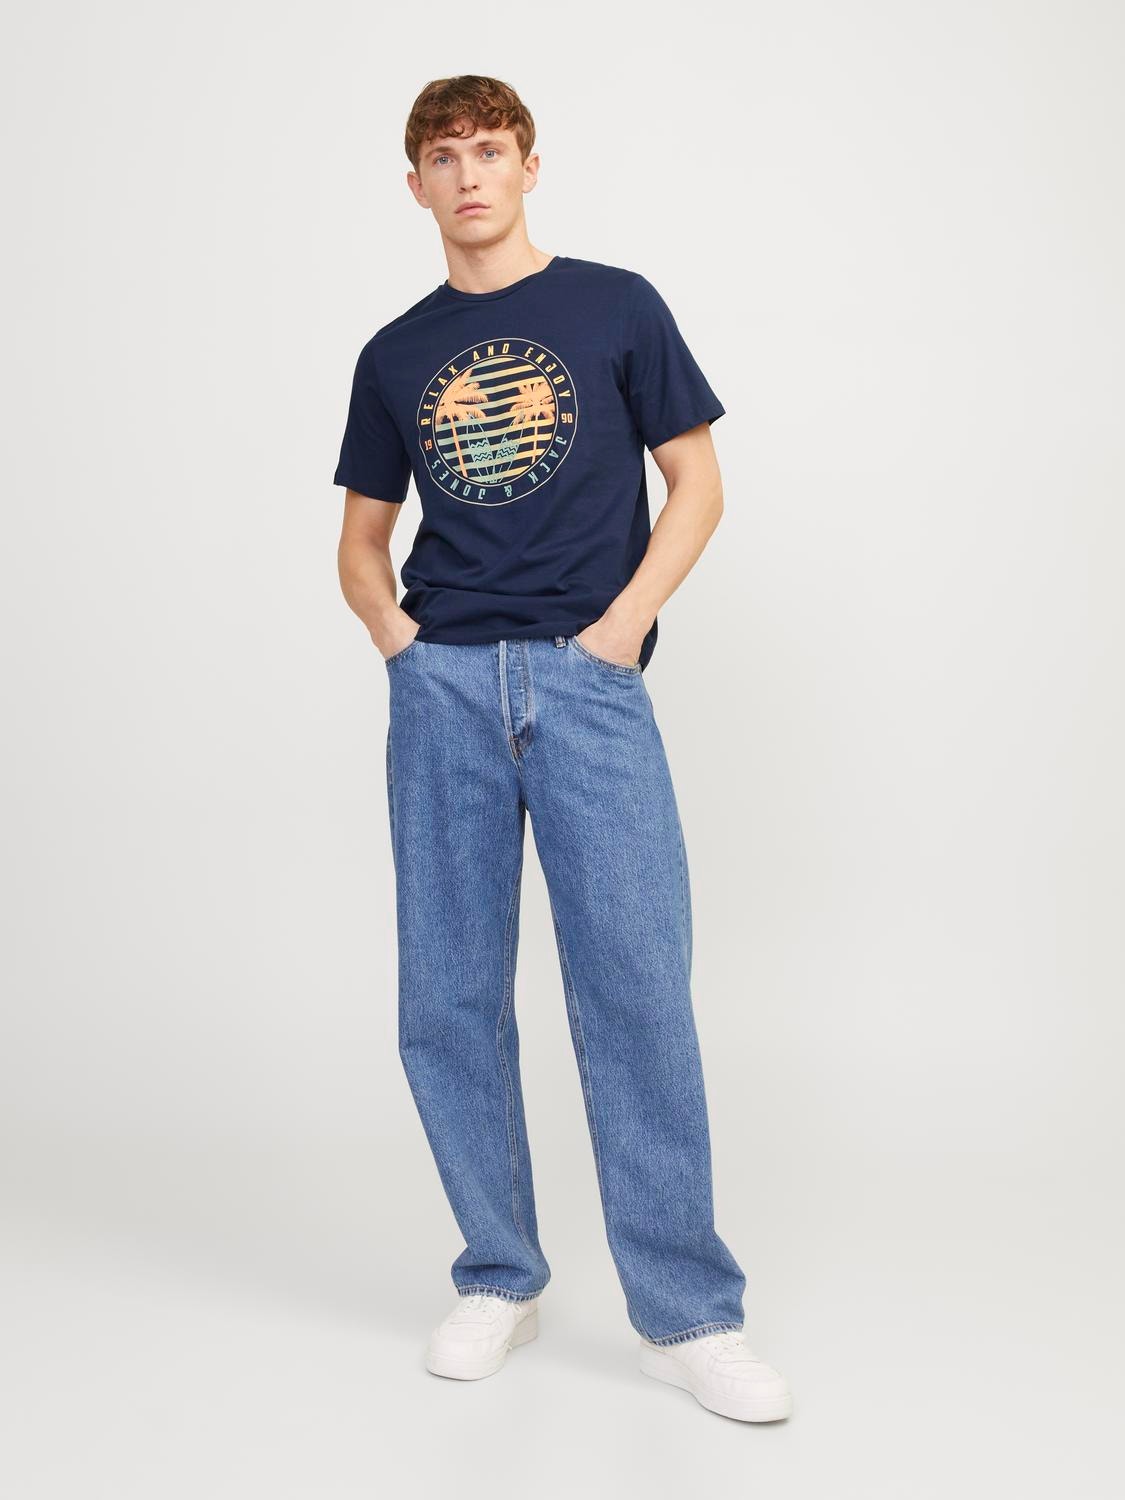 Jack & Jones Bedrukt Ronde hals T-shirt -Navy Blazer - 12249266